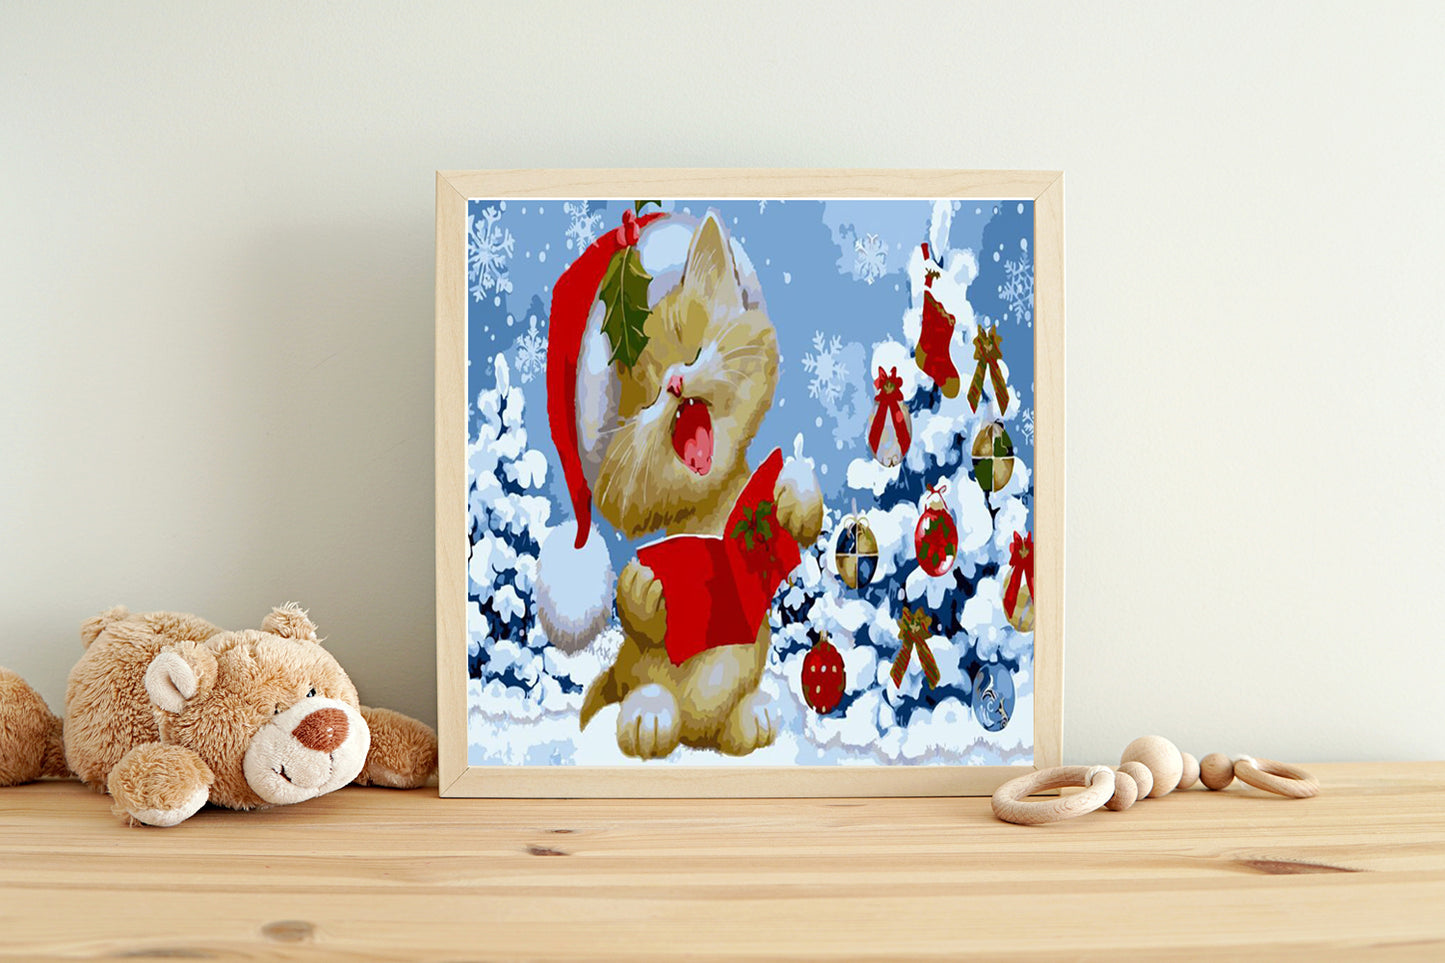 Malen nach Zahlen Erwachsene singende Weihnachtskatze 40x50 cm Paint by Numbers ohne Rahmen DIY Öl Acryl Leinwand Bild Deko Weihnachten Katze Winter